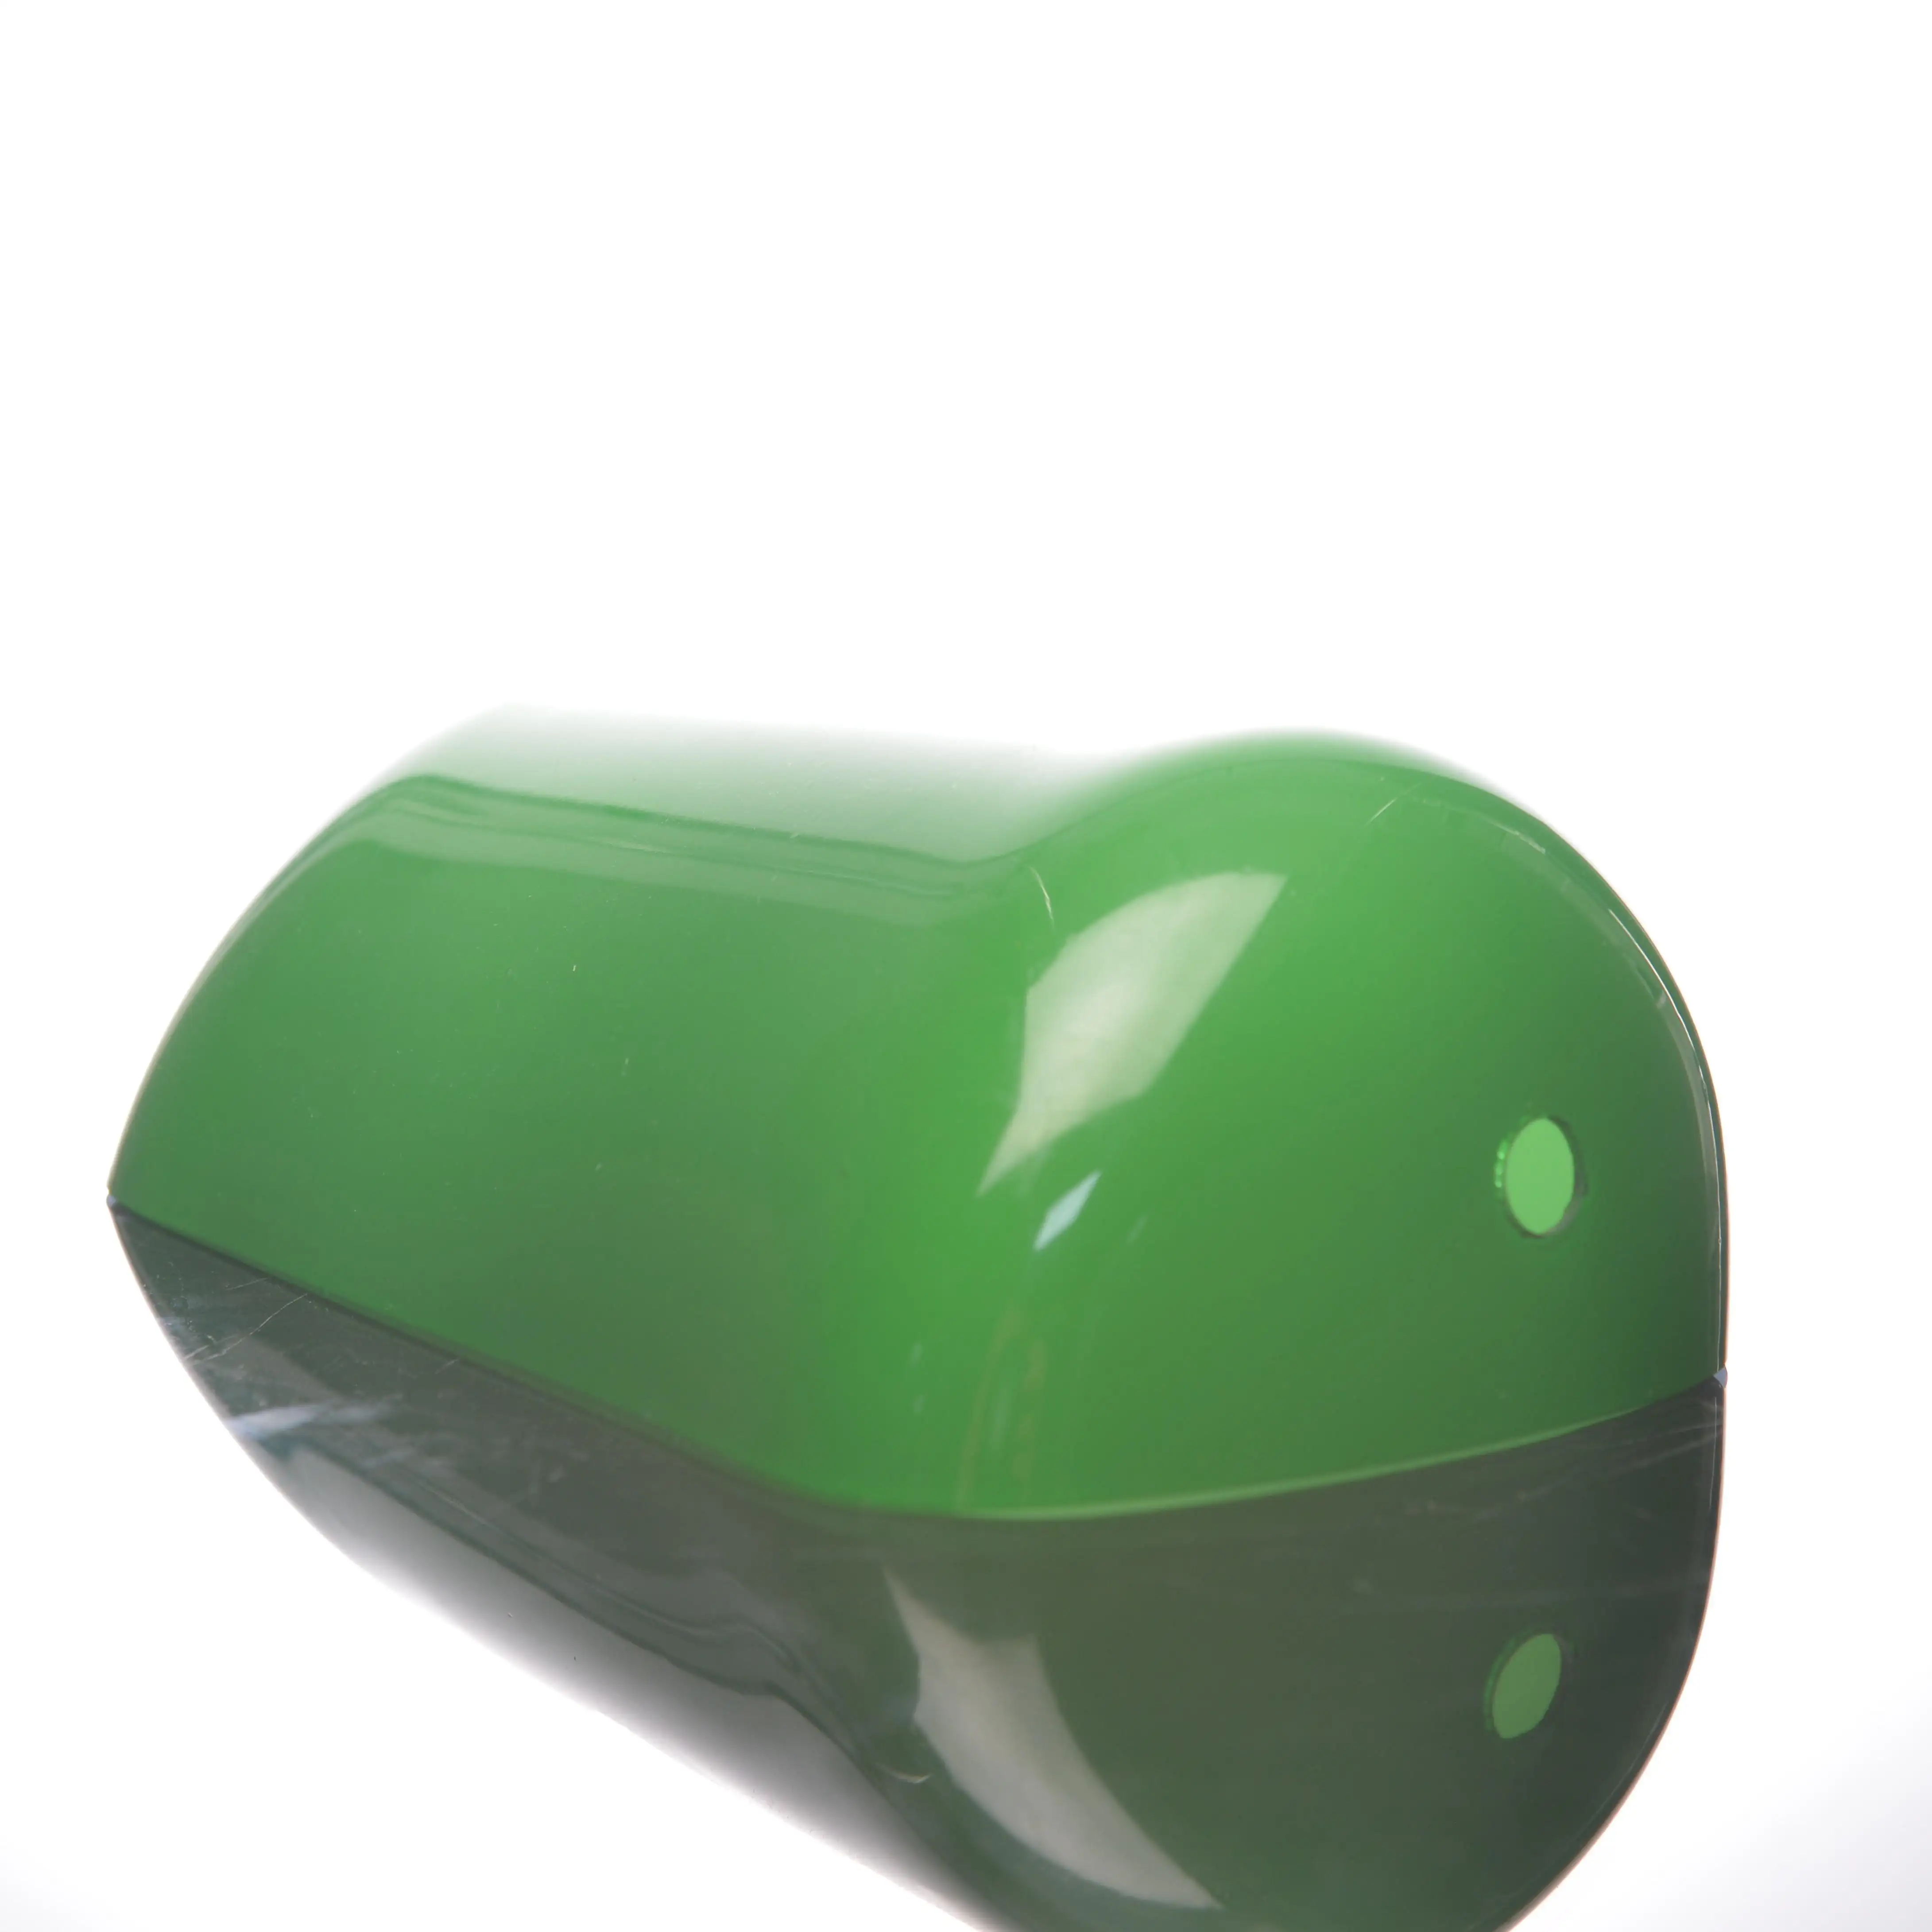 Üretici özel boyut şekli renk yüksek kalite cam abajur değiştirme yeşil cam gölge bankacılar lamba